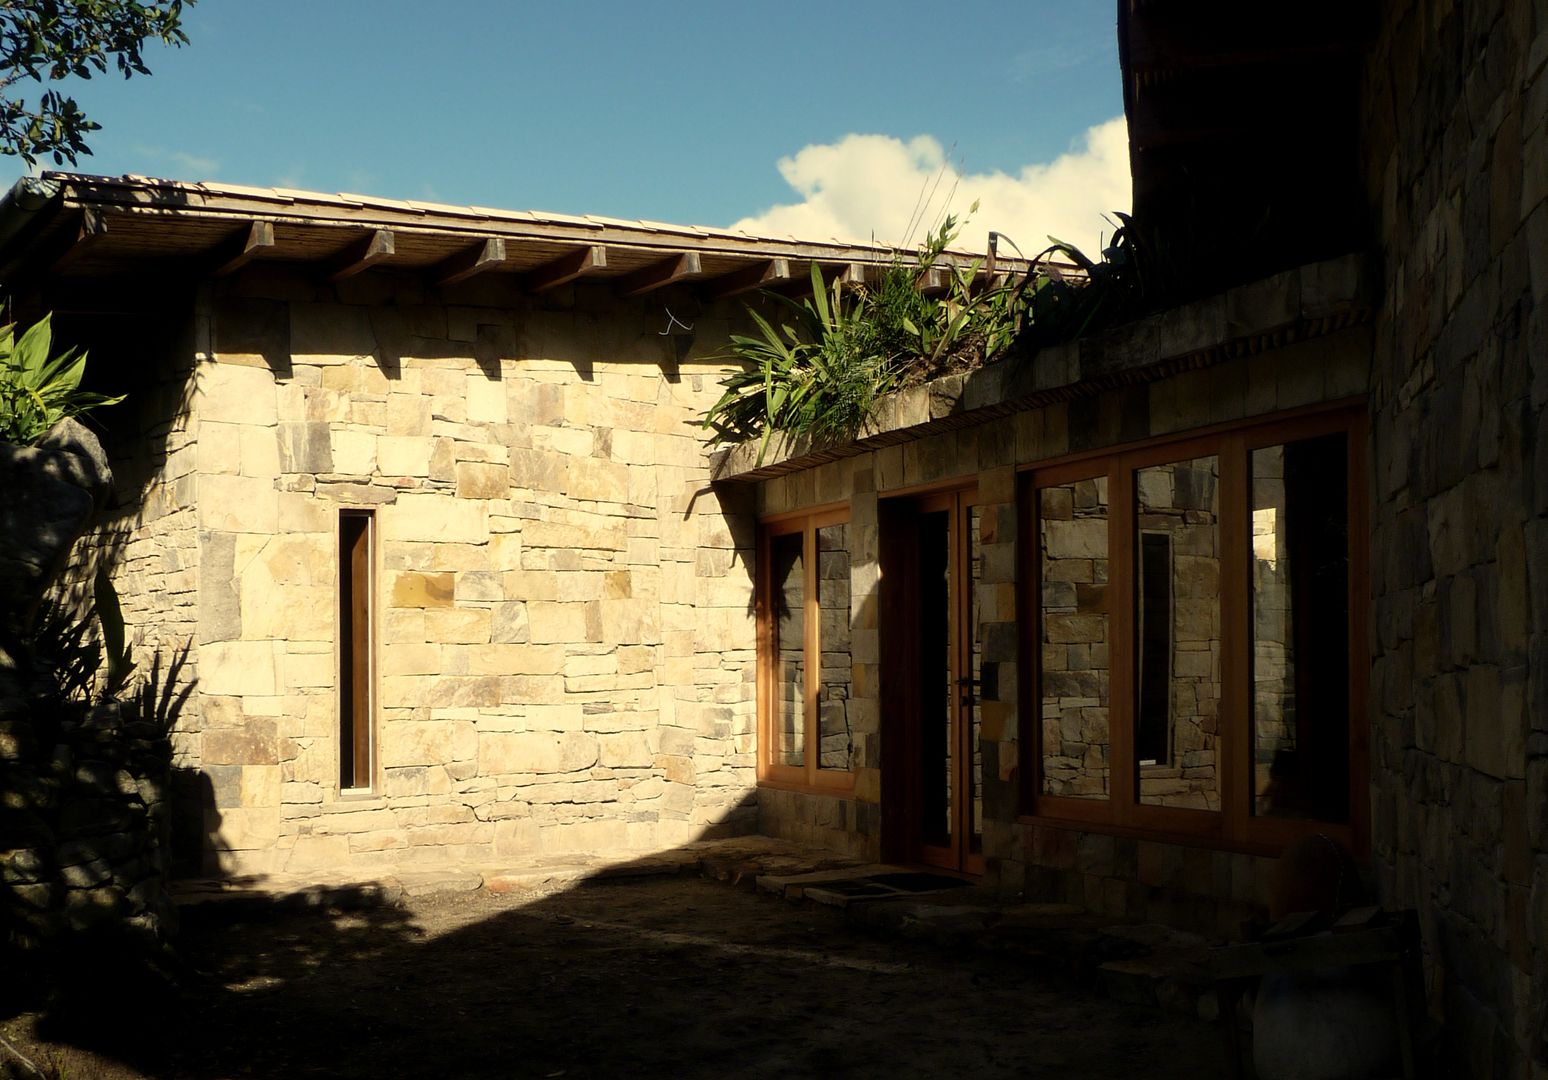 INGRESO PRINCIPAL homify Casas rurales Piedra casa de campo,madera,piedra,ingreso,gocta,teja